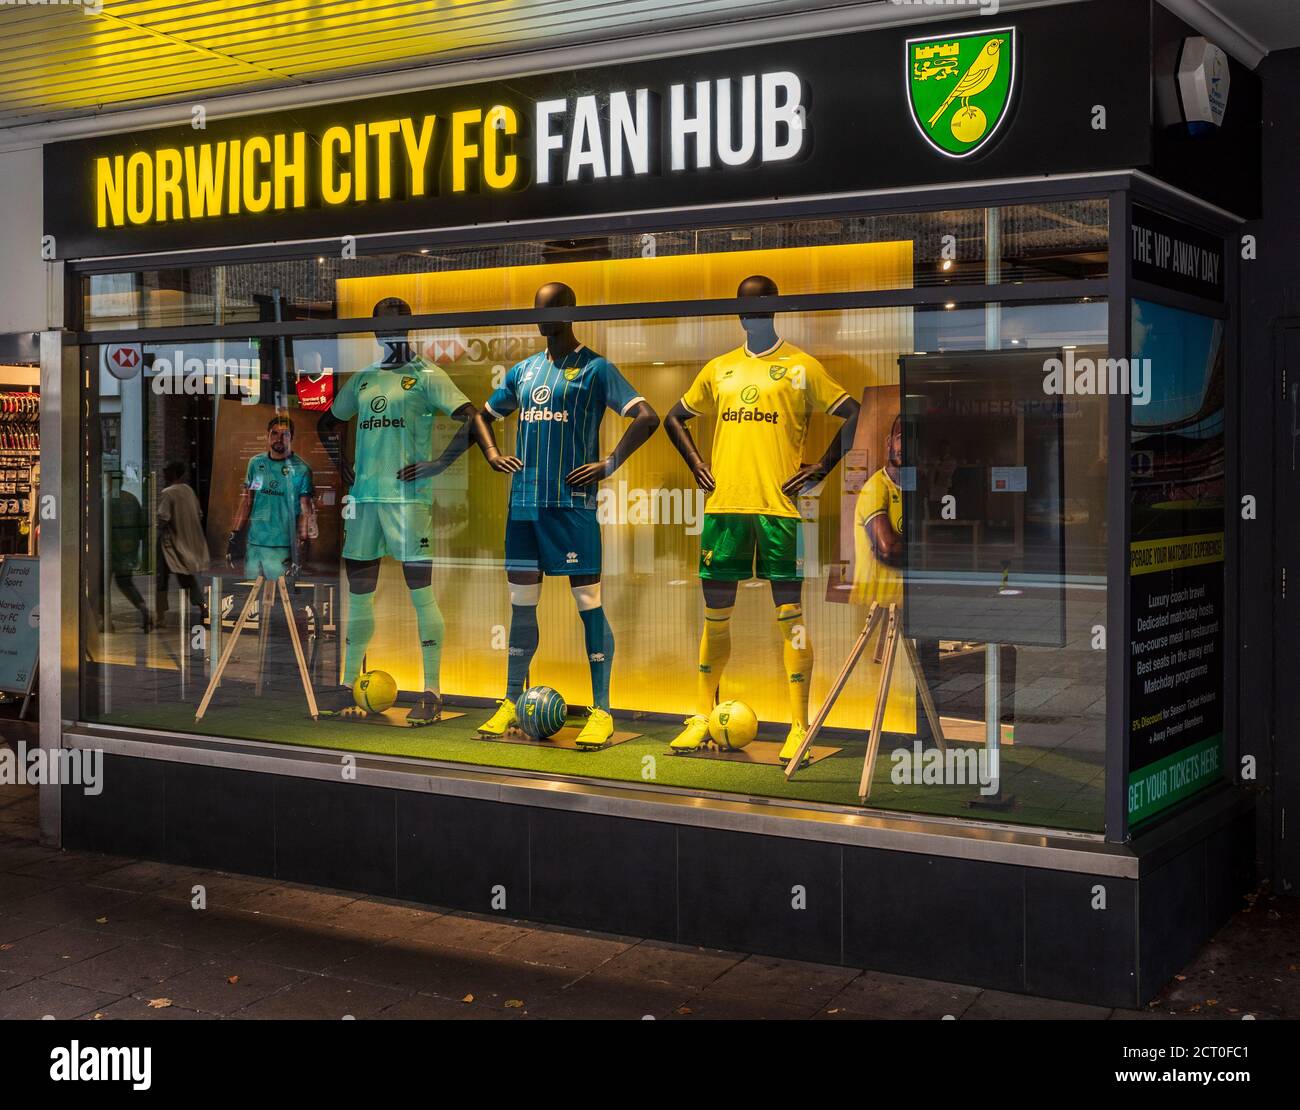 Norwich City FC el cubo del ventilador tienda en el centro de la ciudad de Norwich situado en la tienda Intersport Jarrold. Foto de stock